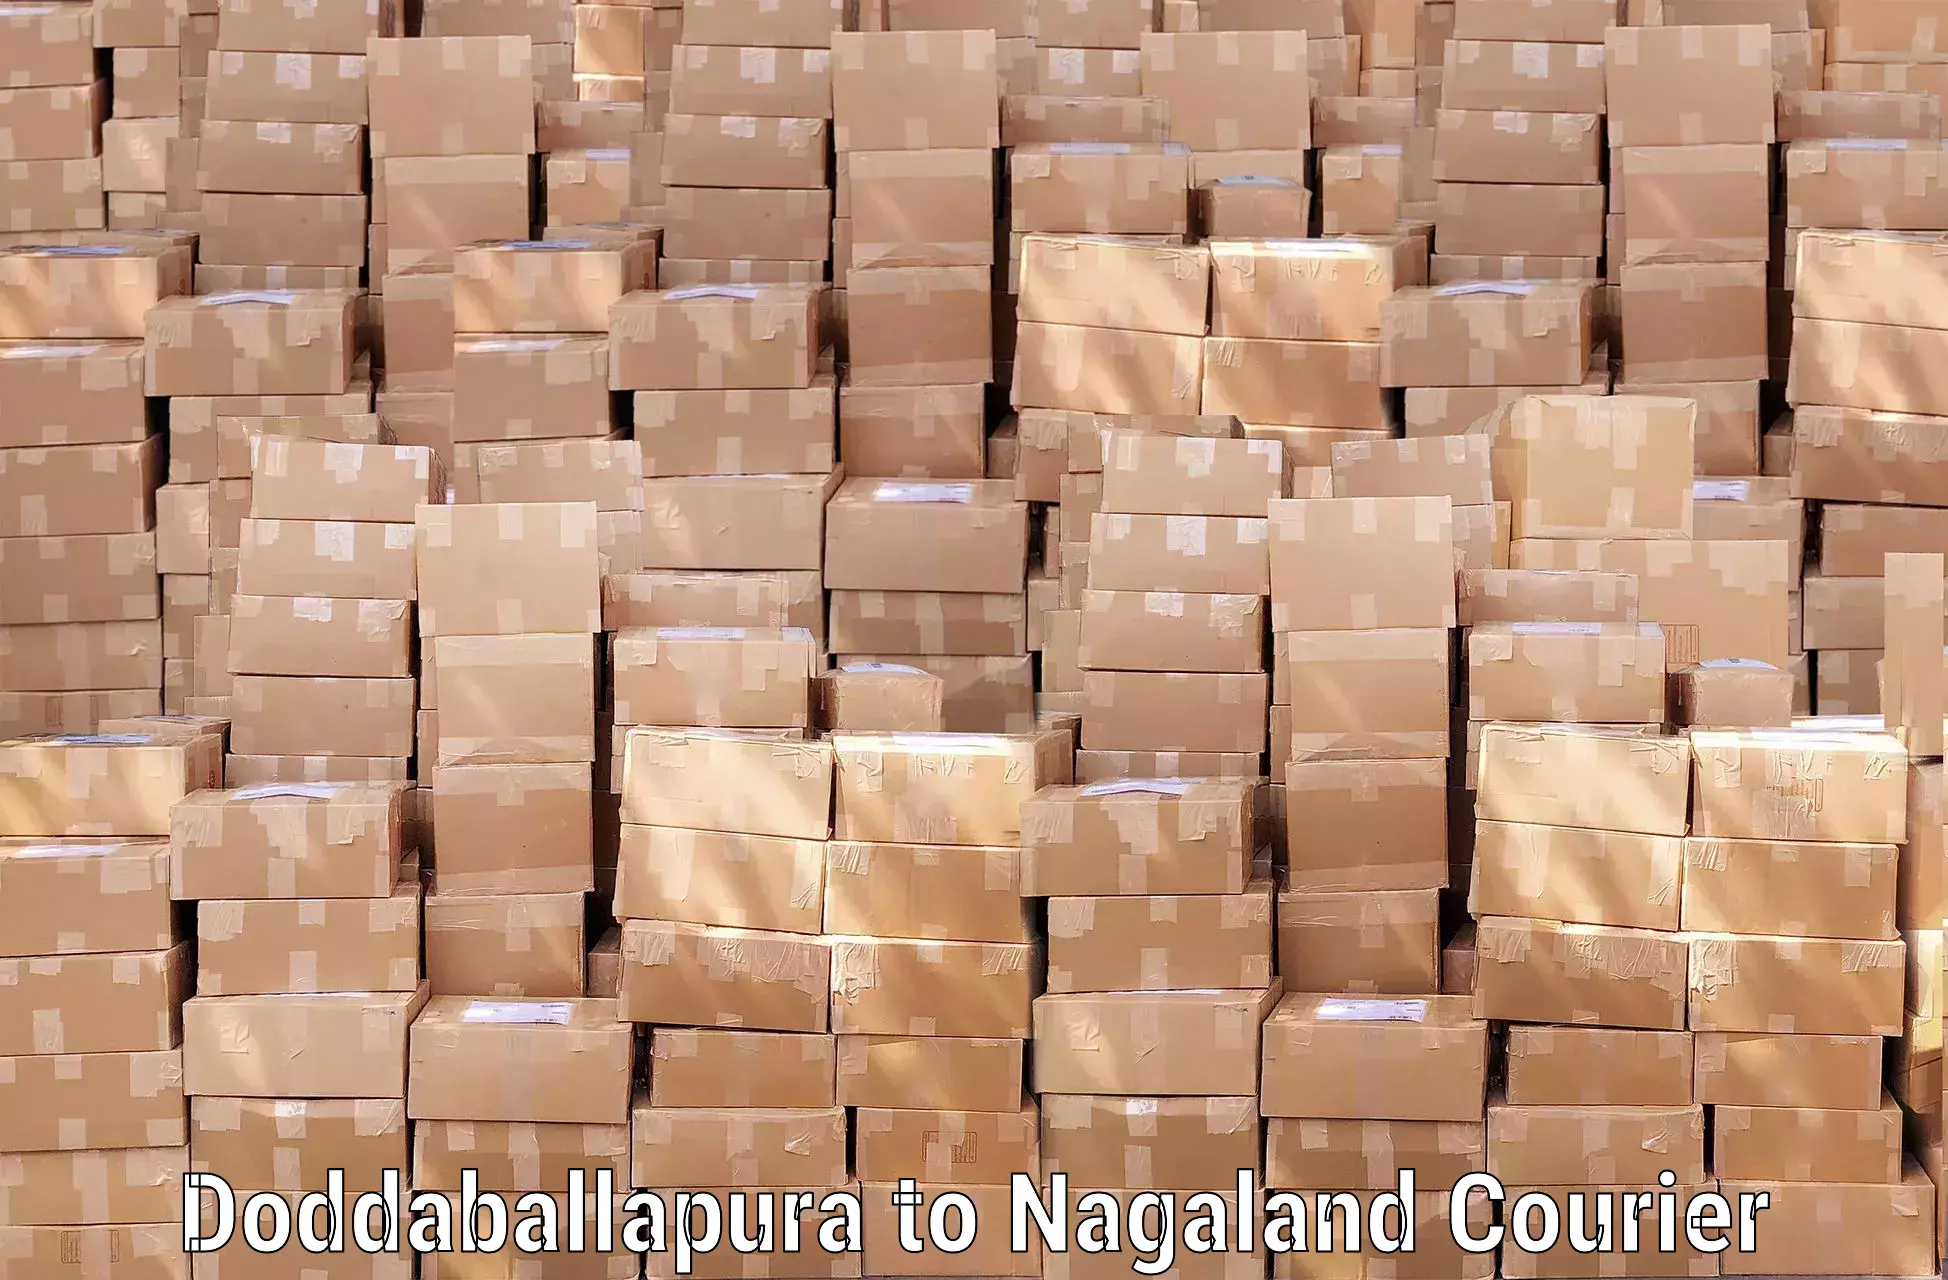 Luggage transport service Doddaballapura to Nagaland